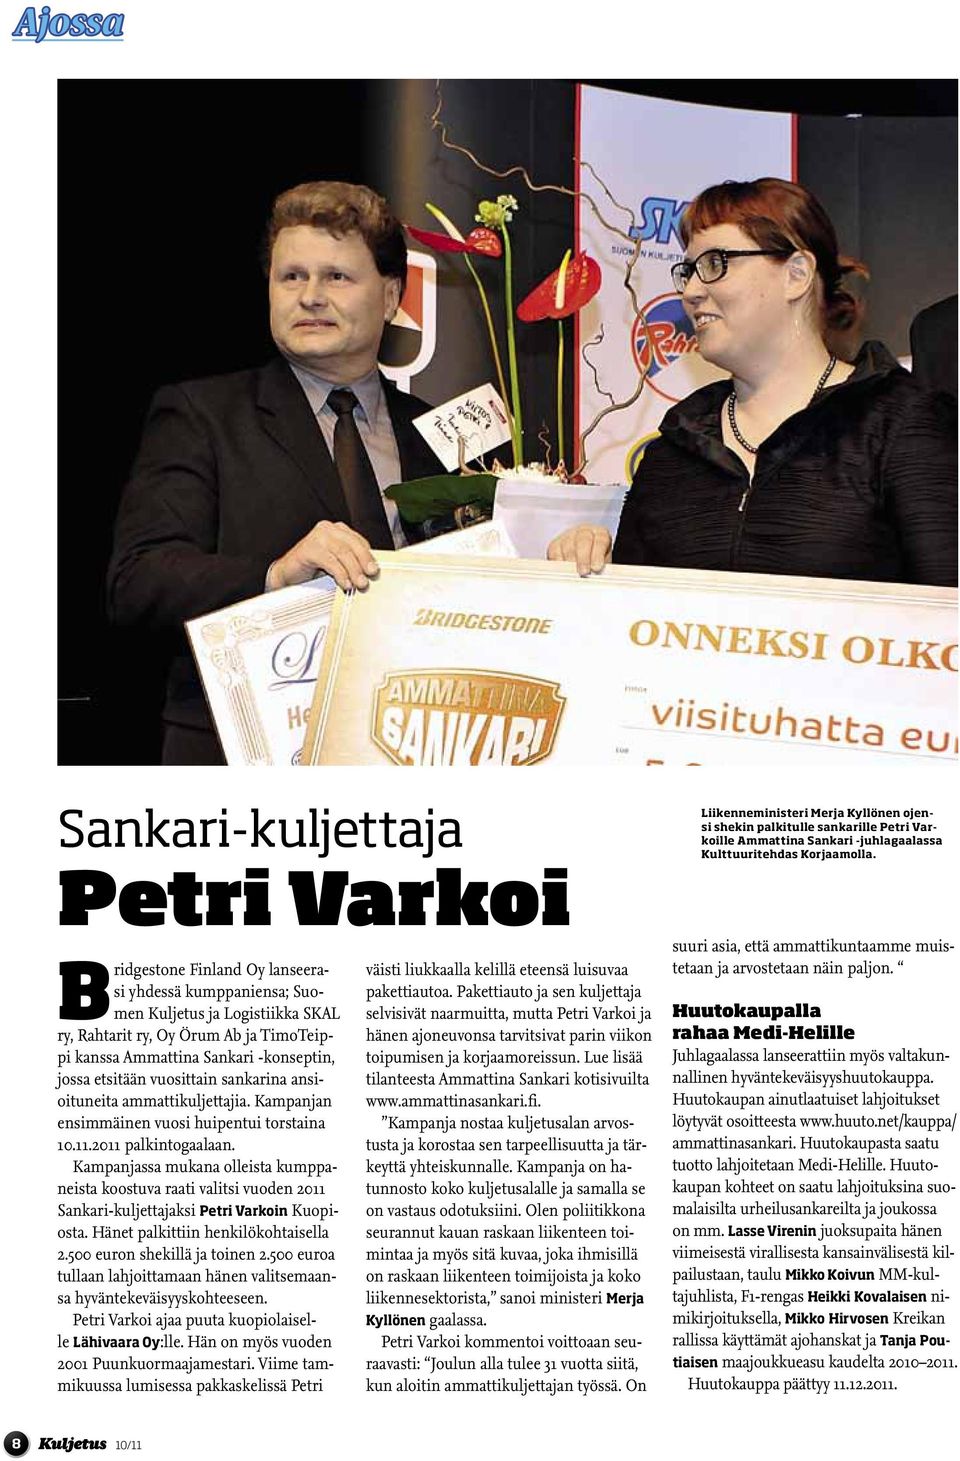 Kampanjassa mukana olleista kumppaneista koostuva raati valitsi vuoden 2011 Sankari-kuljettajaksi Petri Varkoin Kuopiosta. Hänet palkittiin henkilökohtaisella 2.500 euron shekillä ja toinen 2.